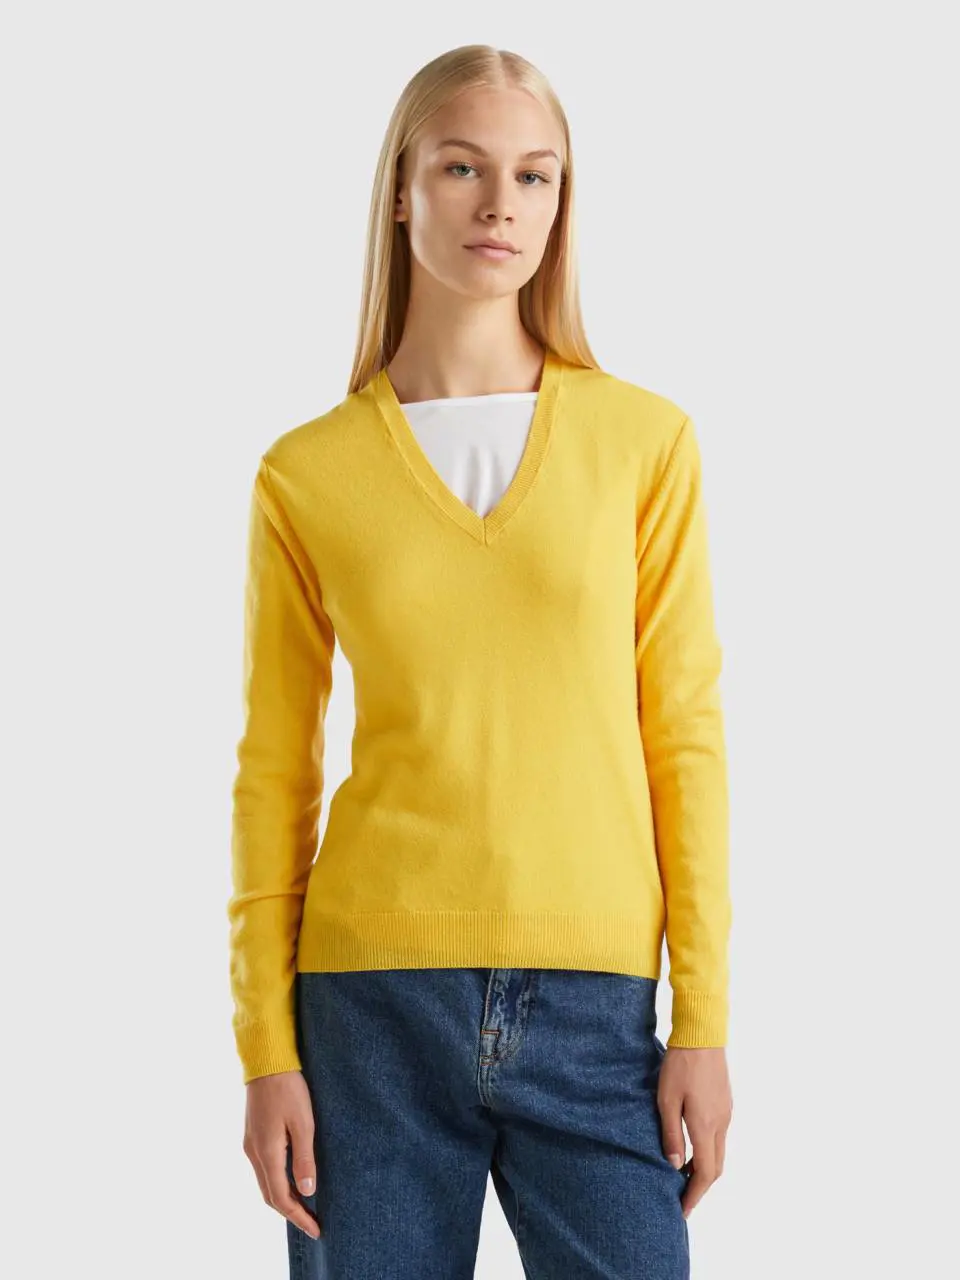 Benetton yellow v-neck sweater in pure merino wool. 1